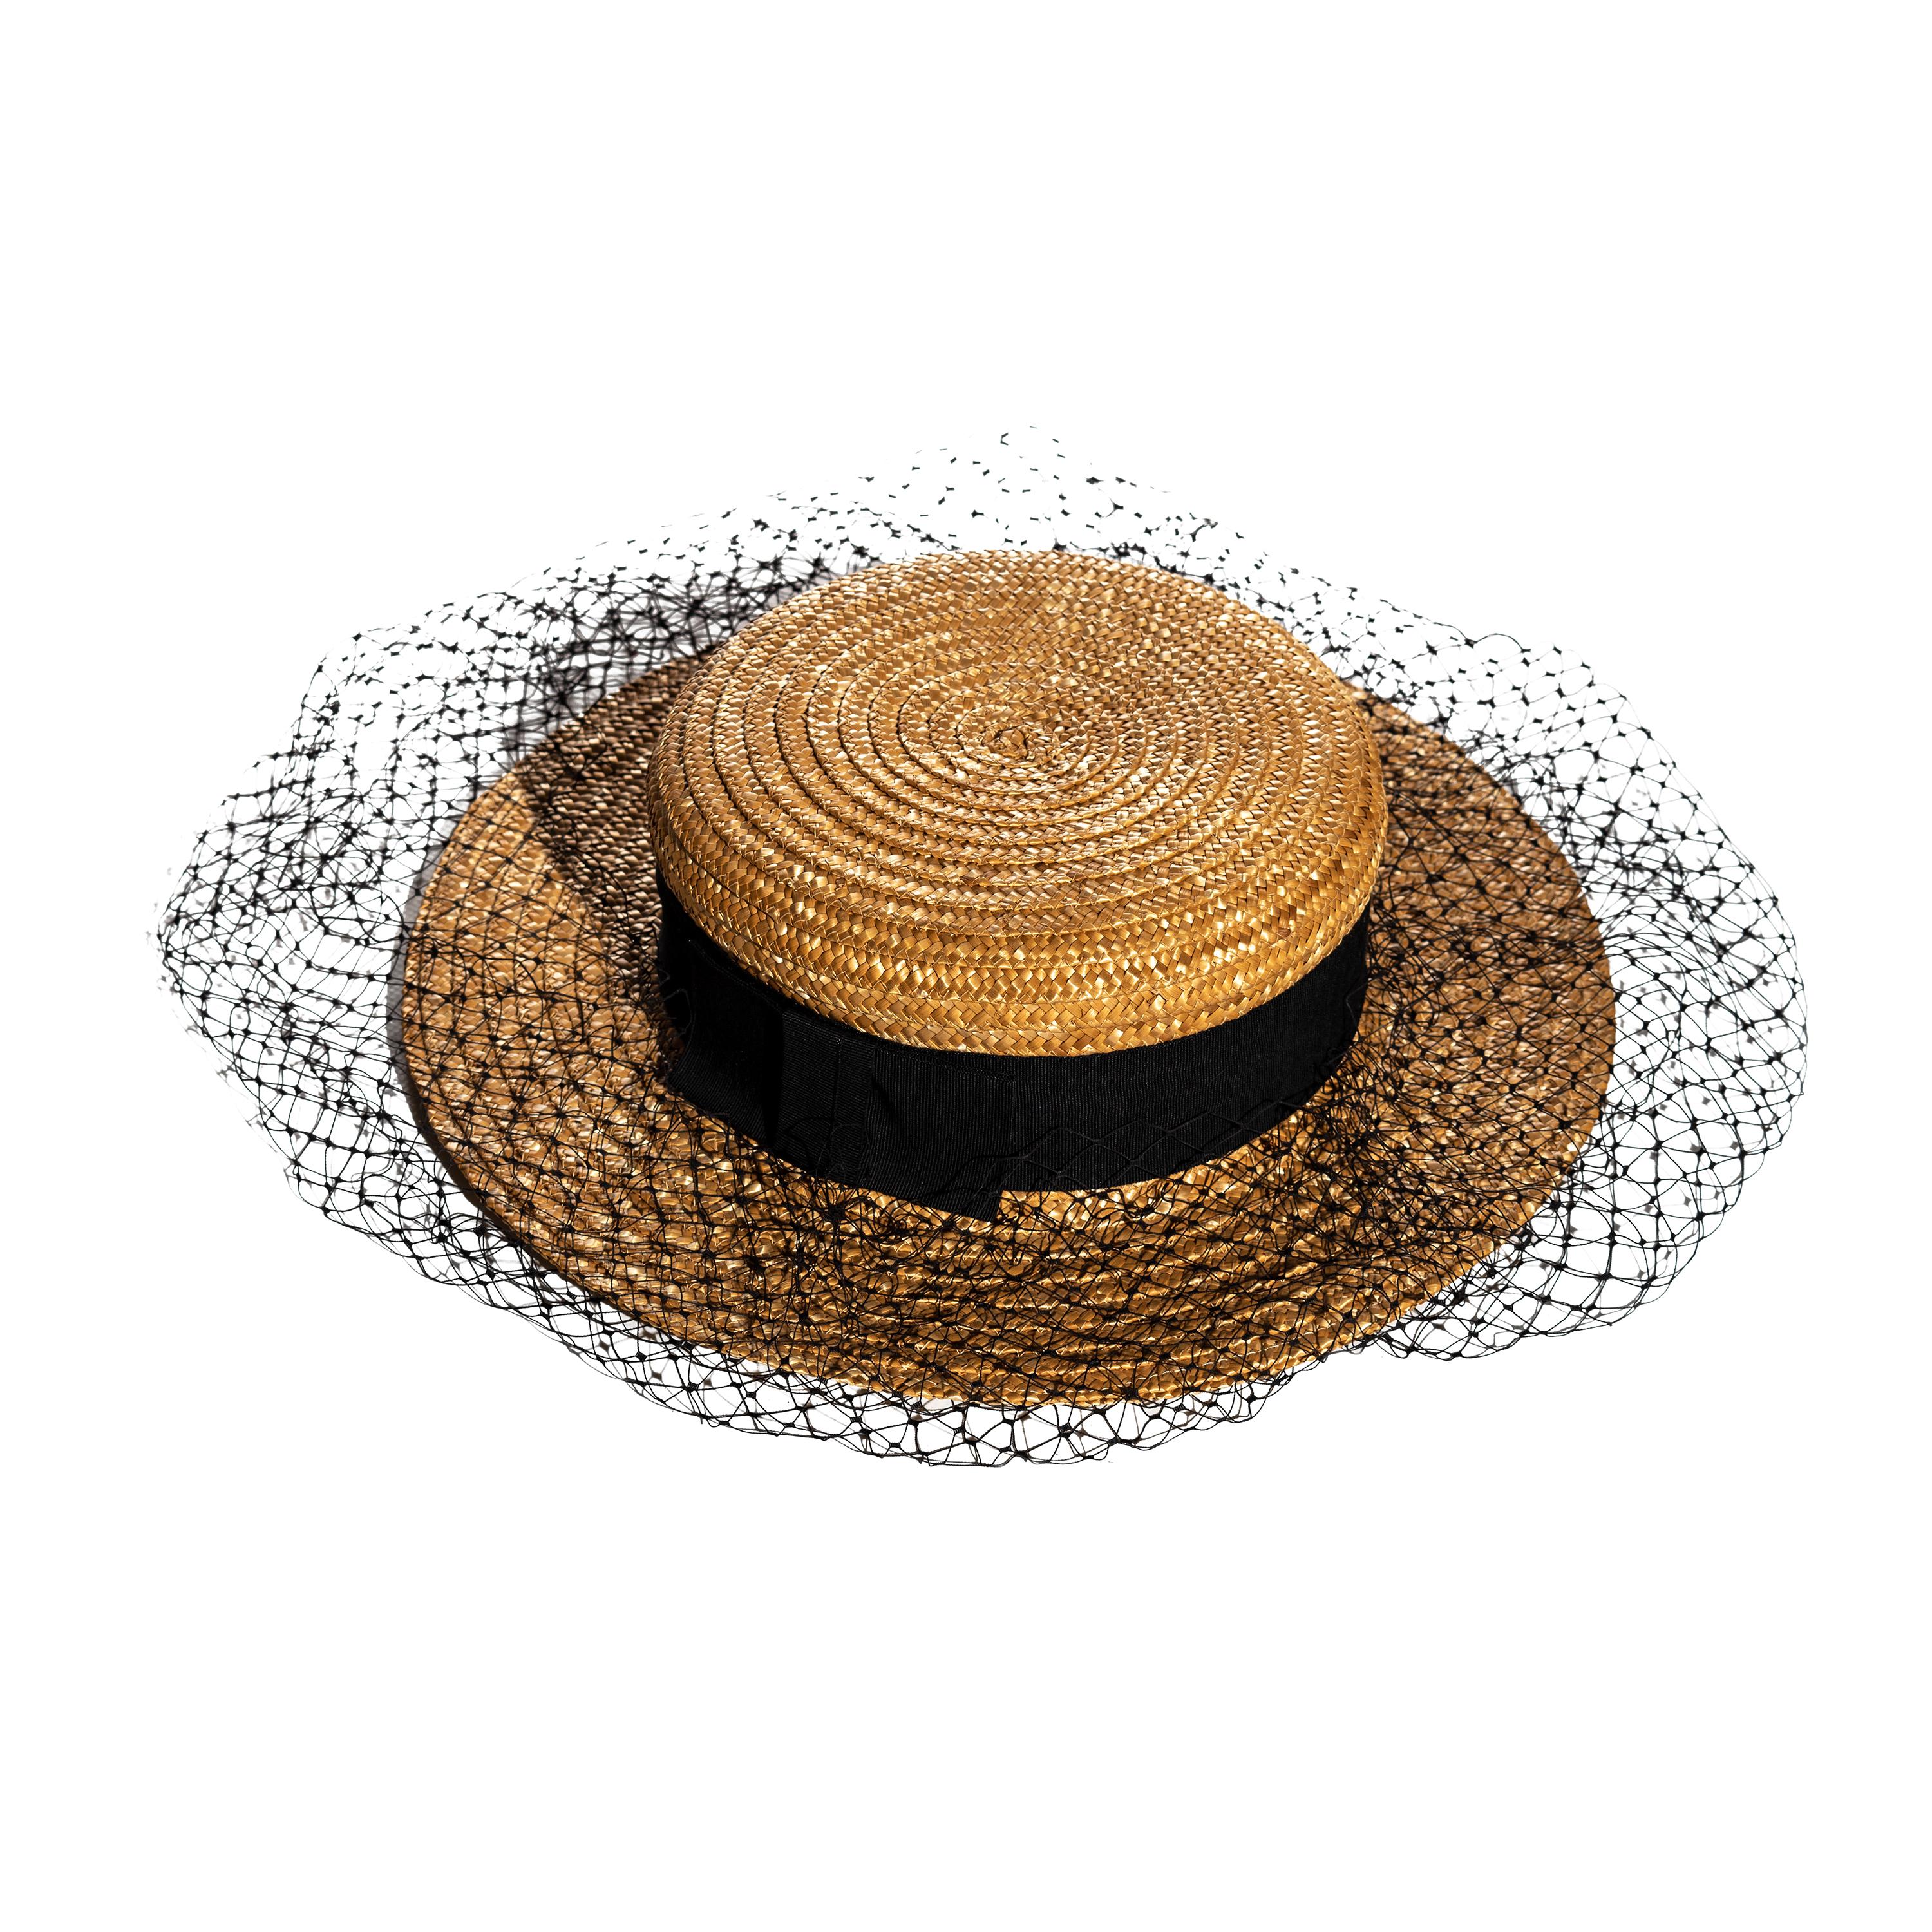 Vivienne Westwood veiled raffia boater hat, ss 1988